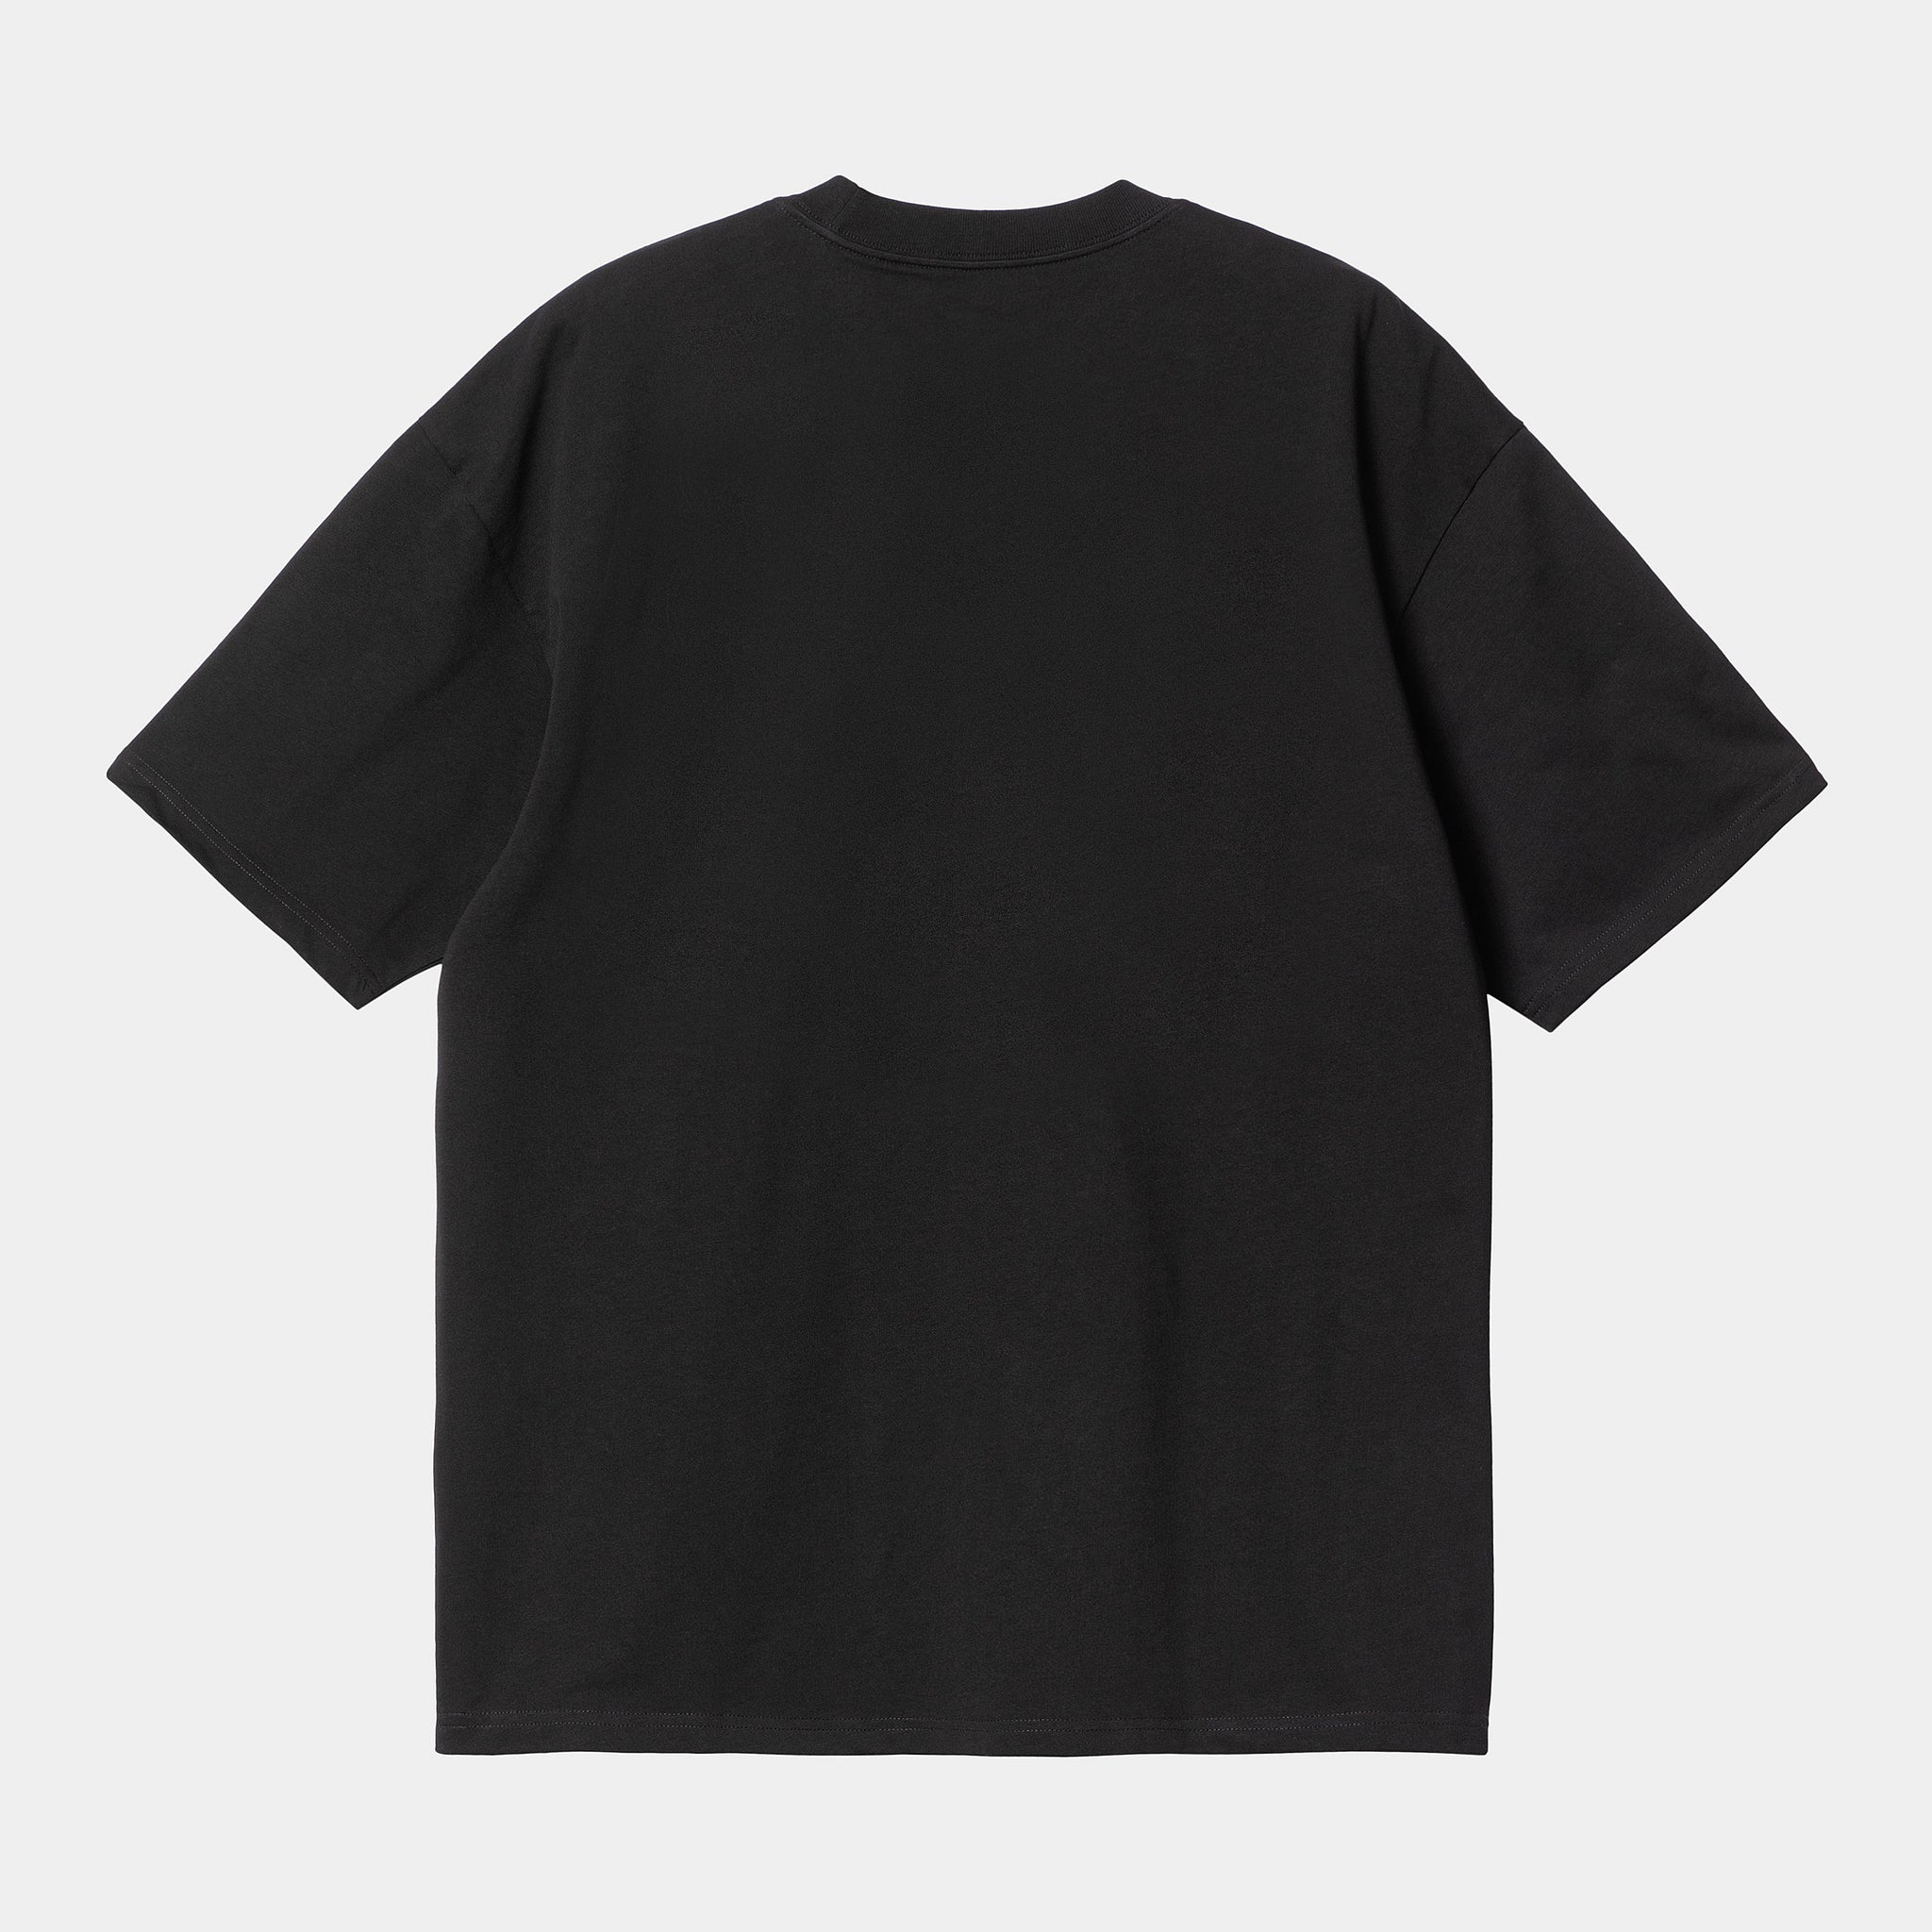 Carhartt WIP S/S Mist T-Shirt Black / Wax